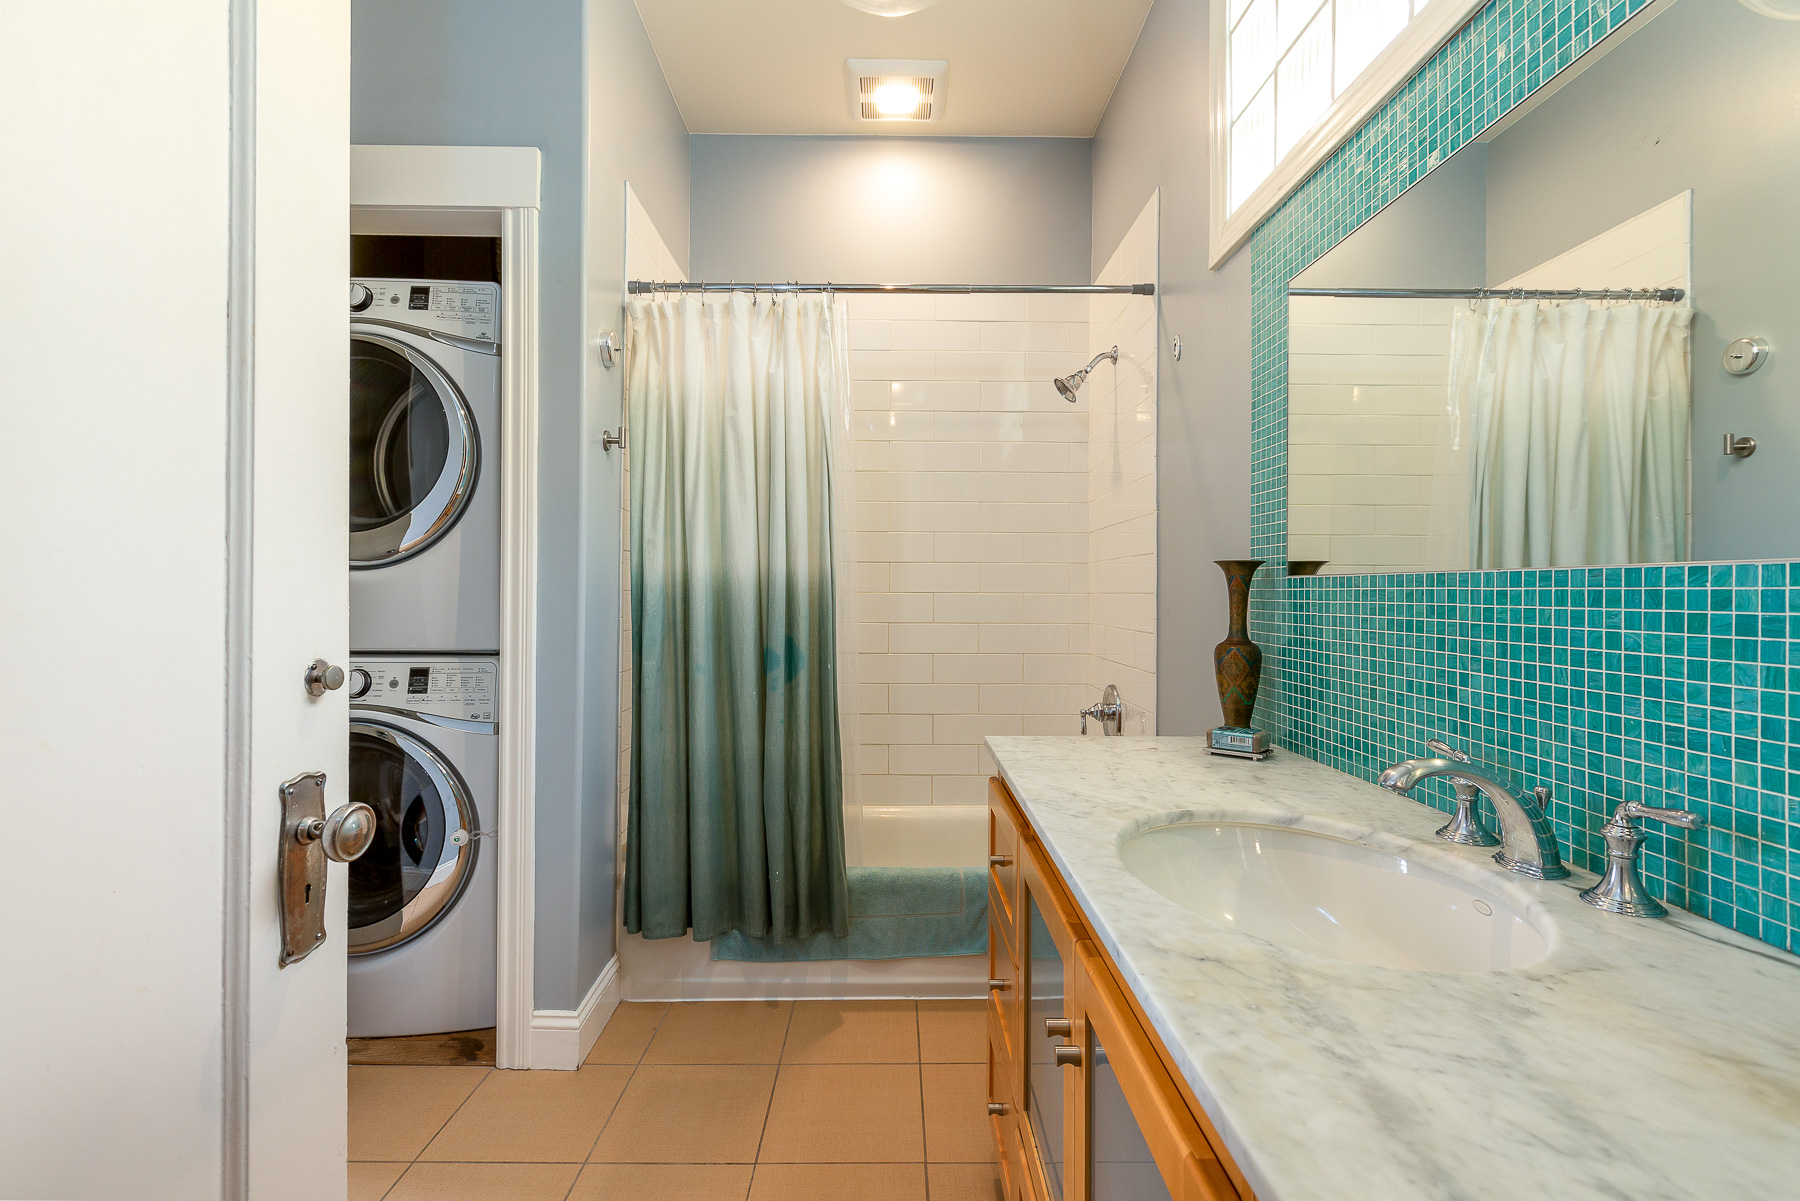 Property Photo: Bathroom with blue tile backsplash and a large shower